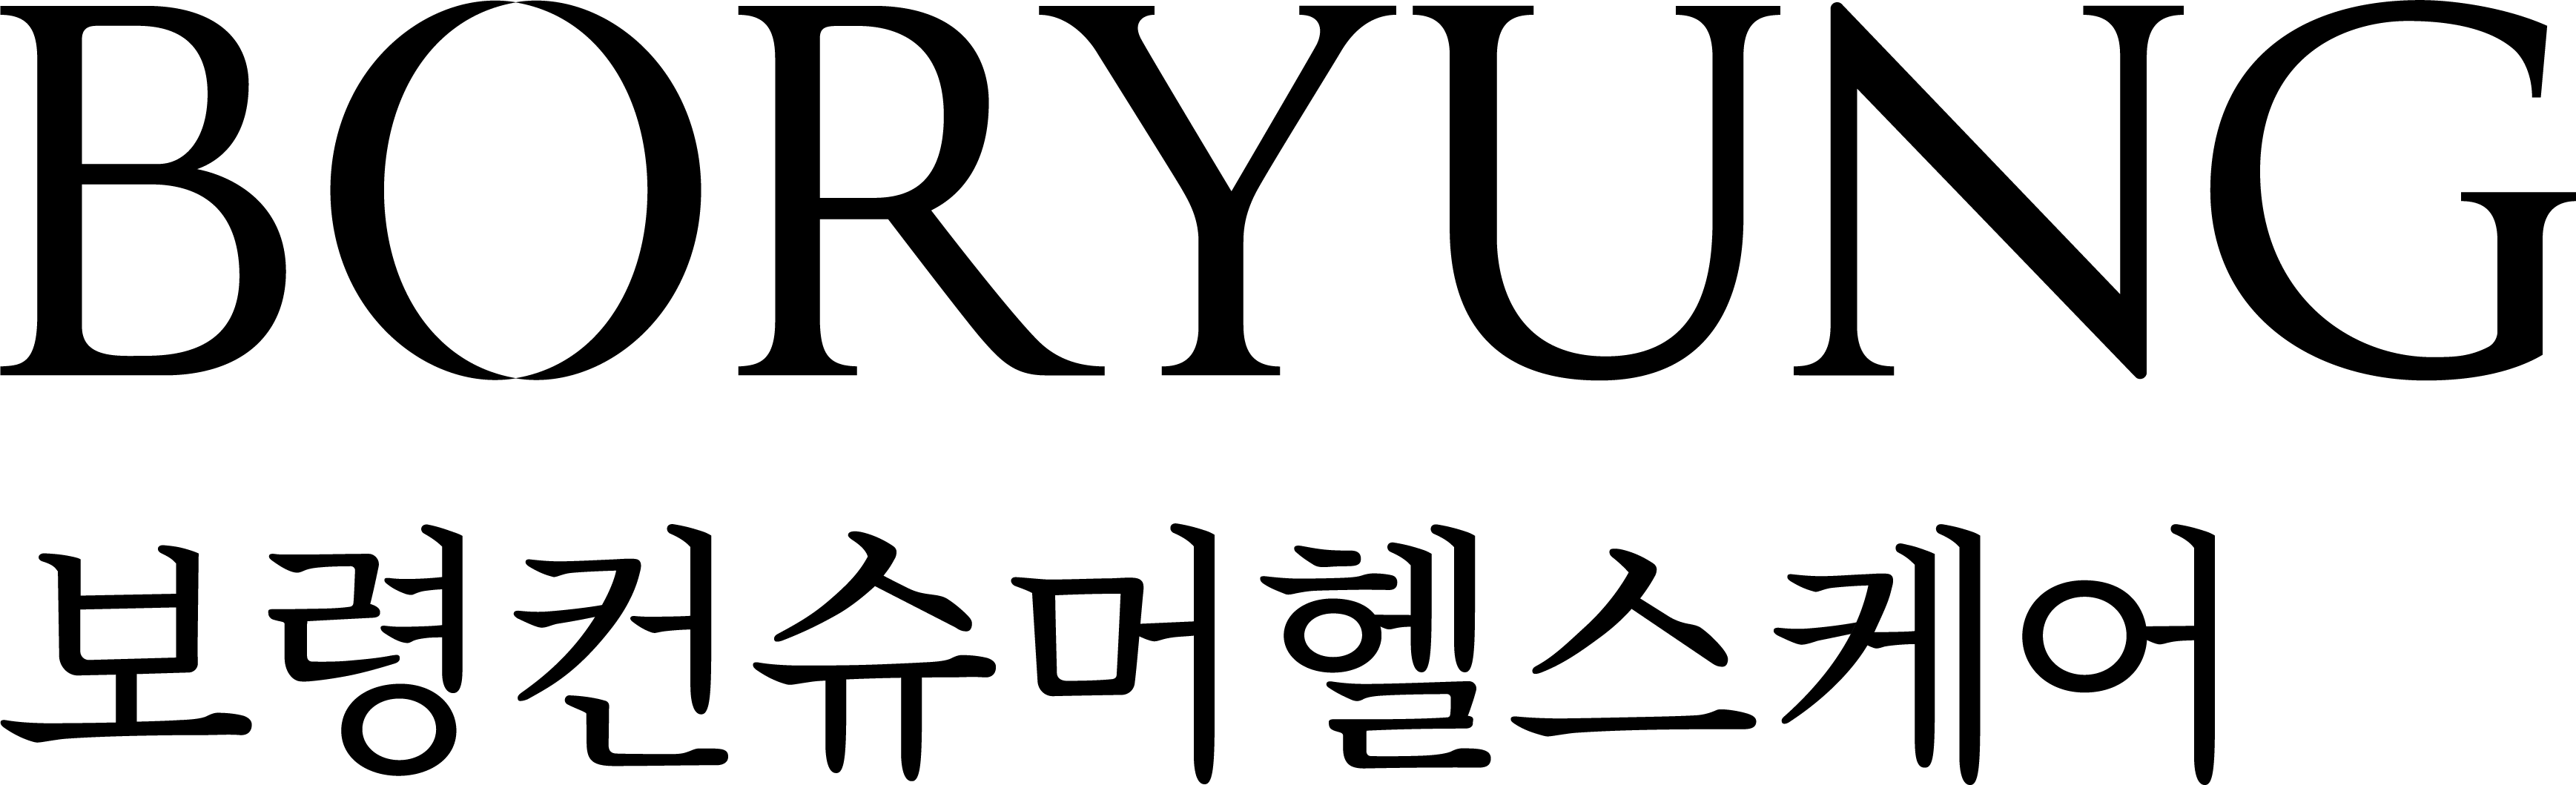 보령홀딩스의 계열사 보령컨슈머헬스케어(주)의 로고